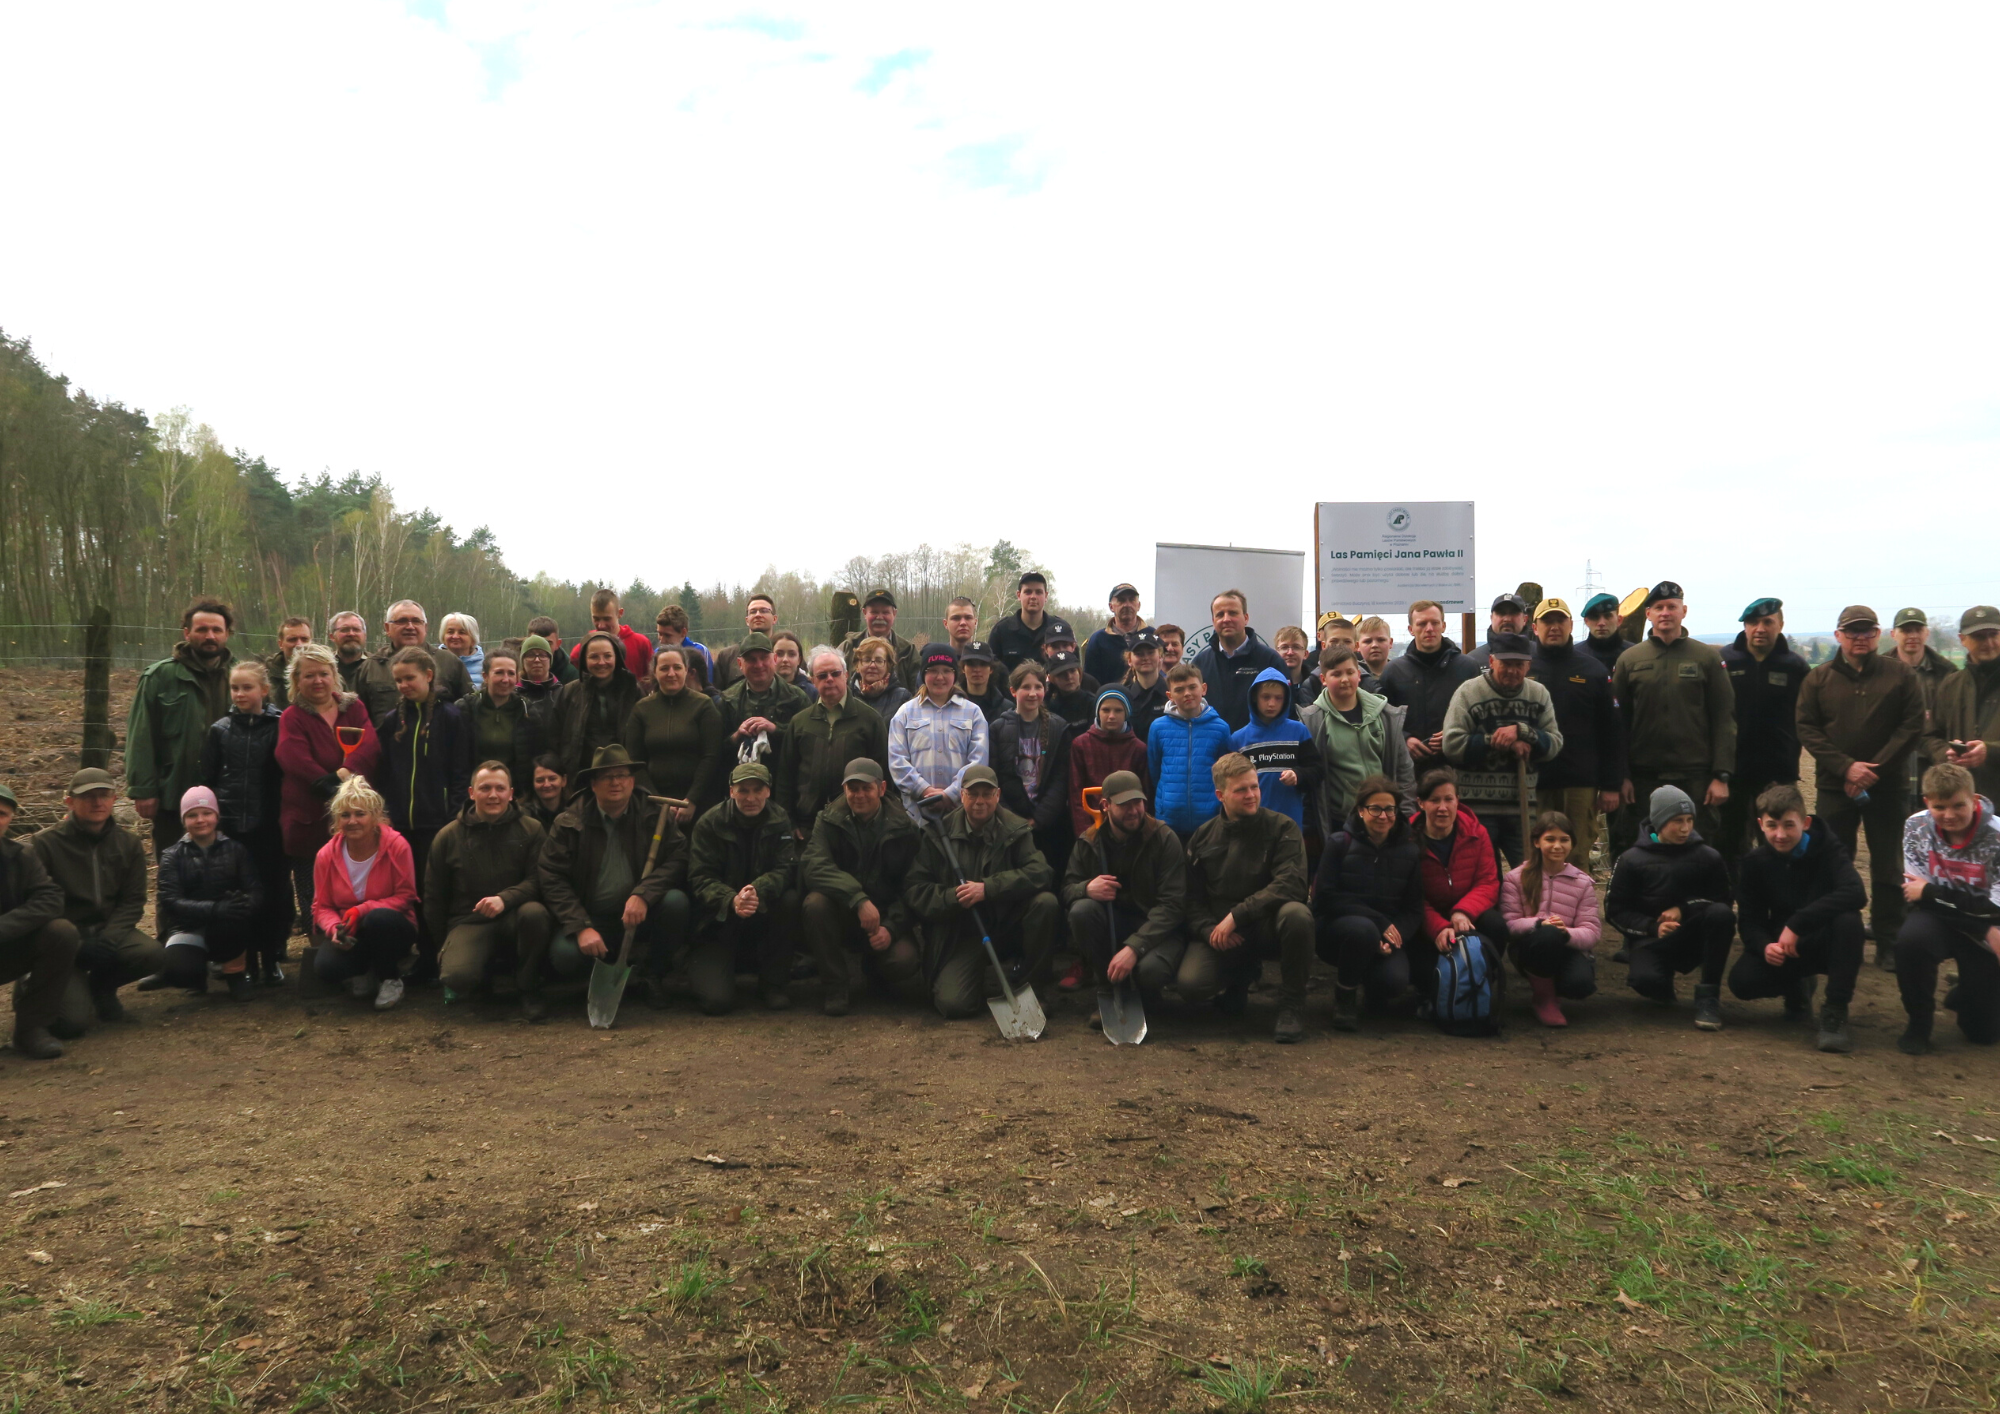 Zdjęcie przedstawia grupę kilkudziesięciu osób m.in. uczniów, żołnierzy, leśników, stojących przy powierzchni, na której posadzili sadzonki dębów. Fot. RDLP w Poznaniu